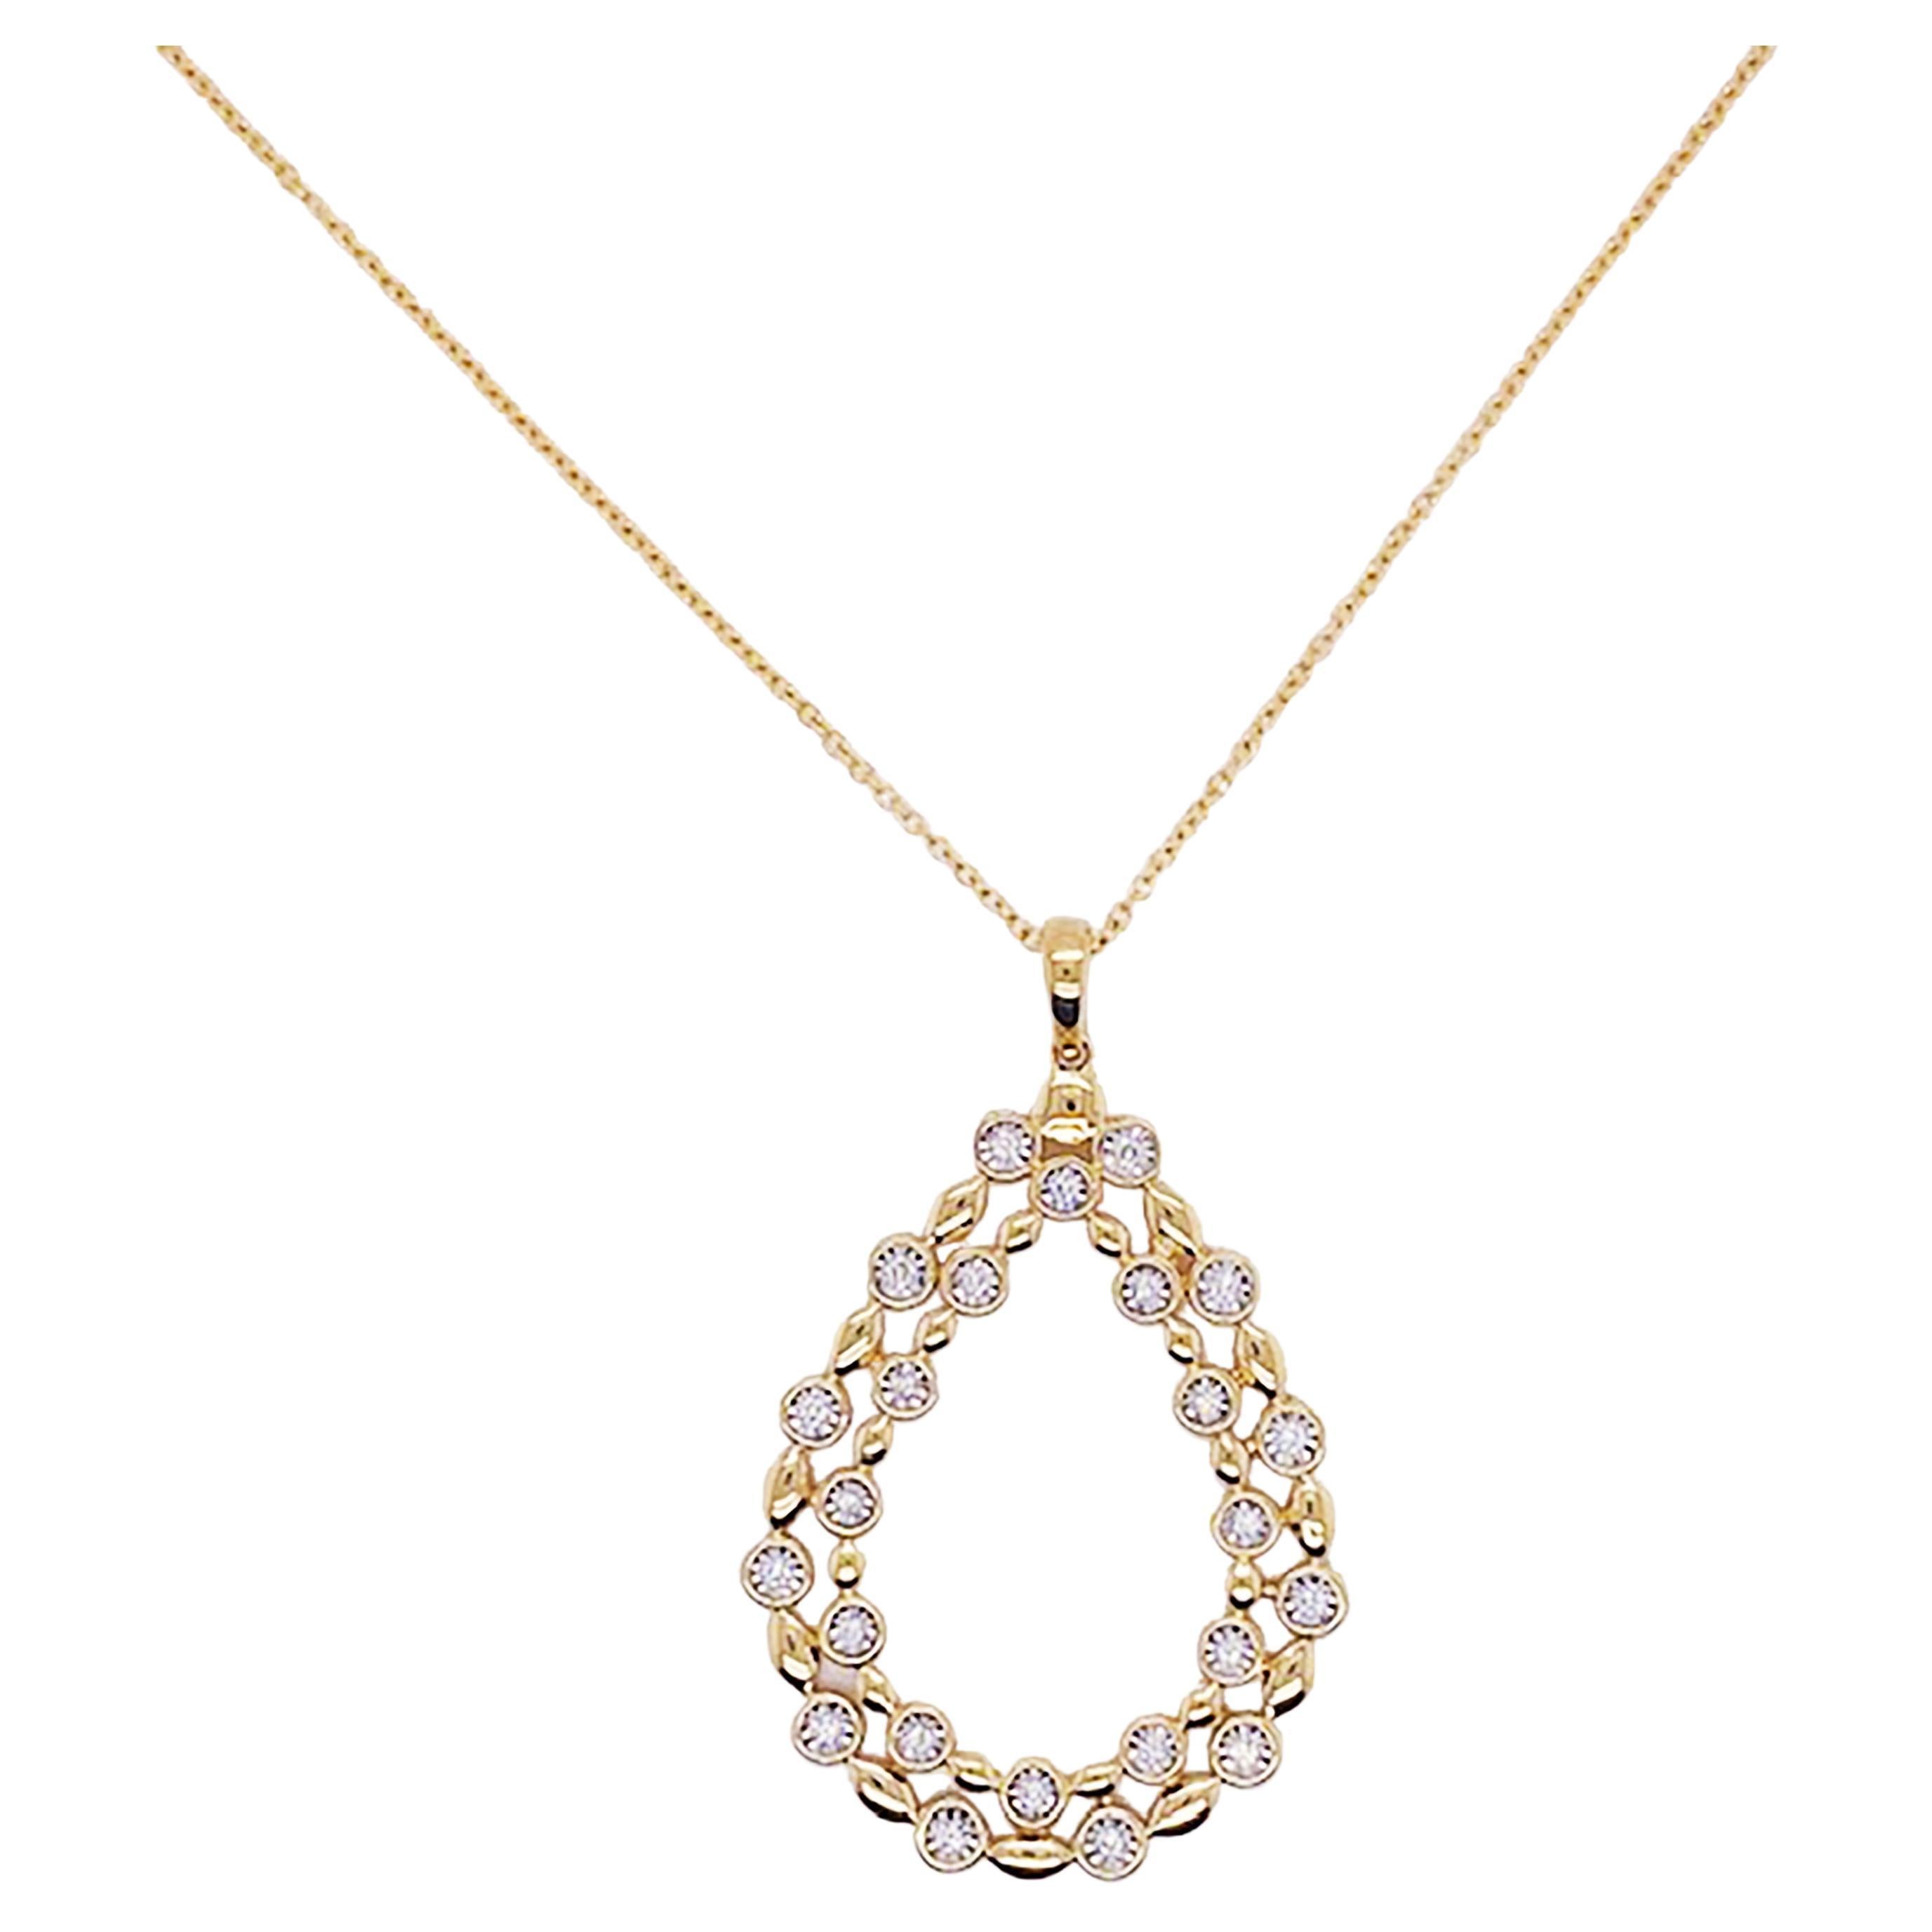 Huge Diamond Pendant Necklace 14K Gold Pear Shape .16 Carat Diamond Necklace